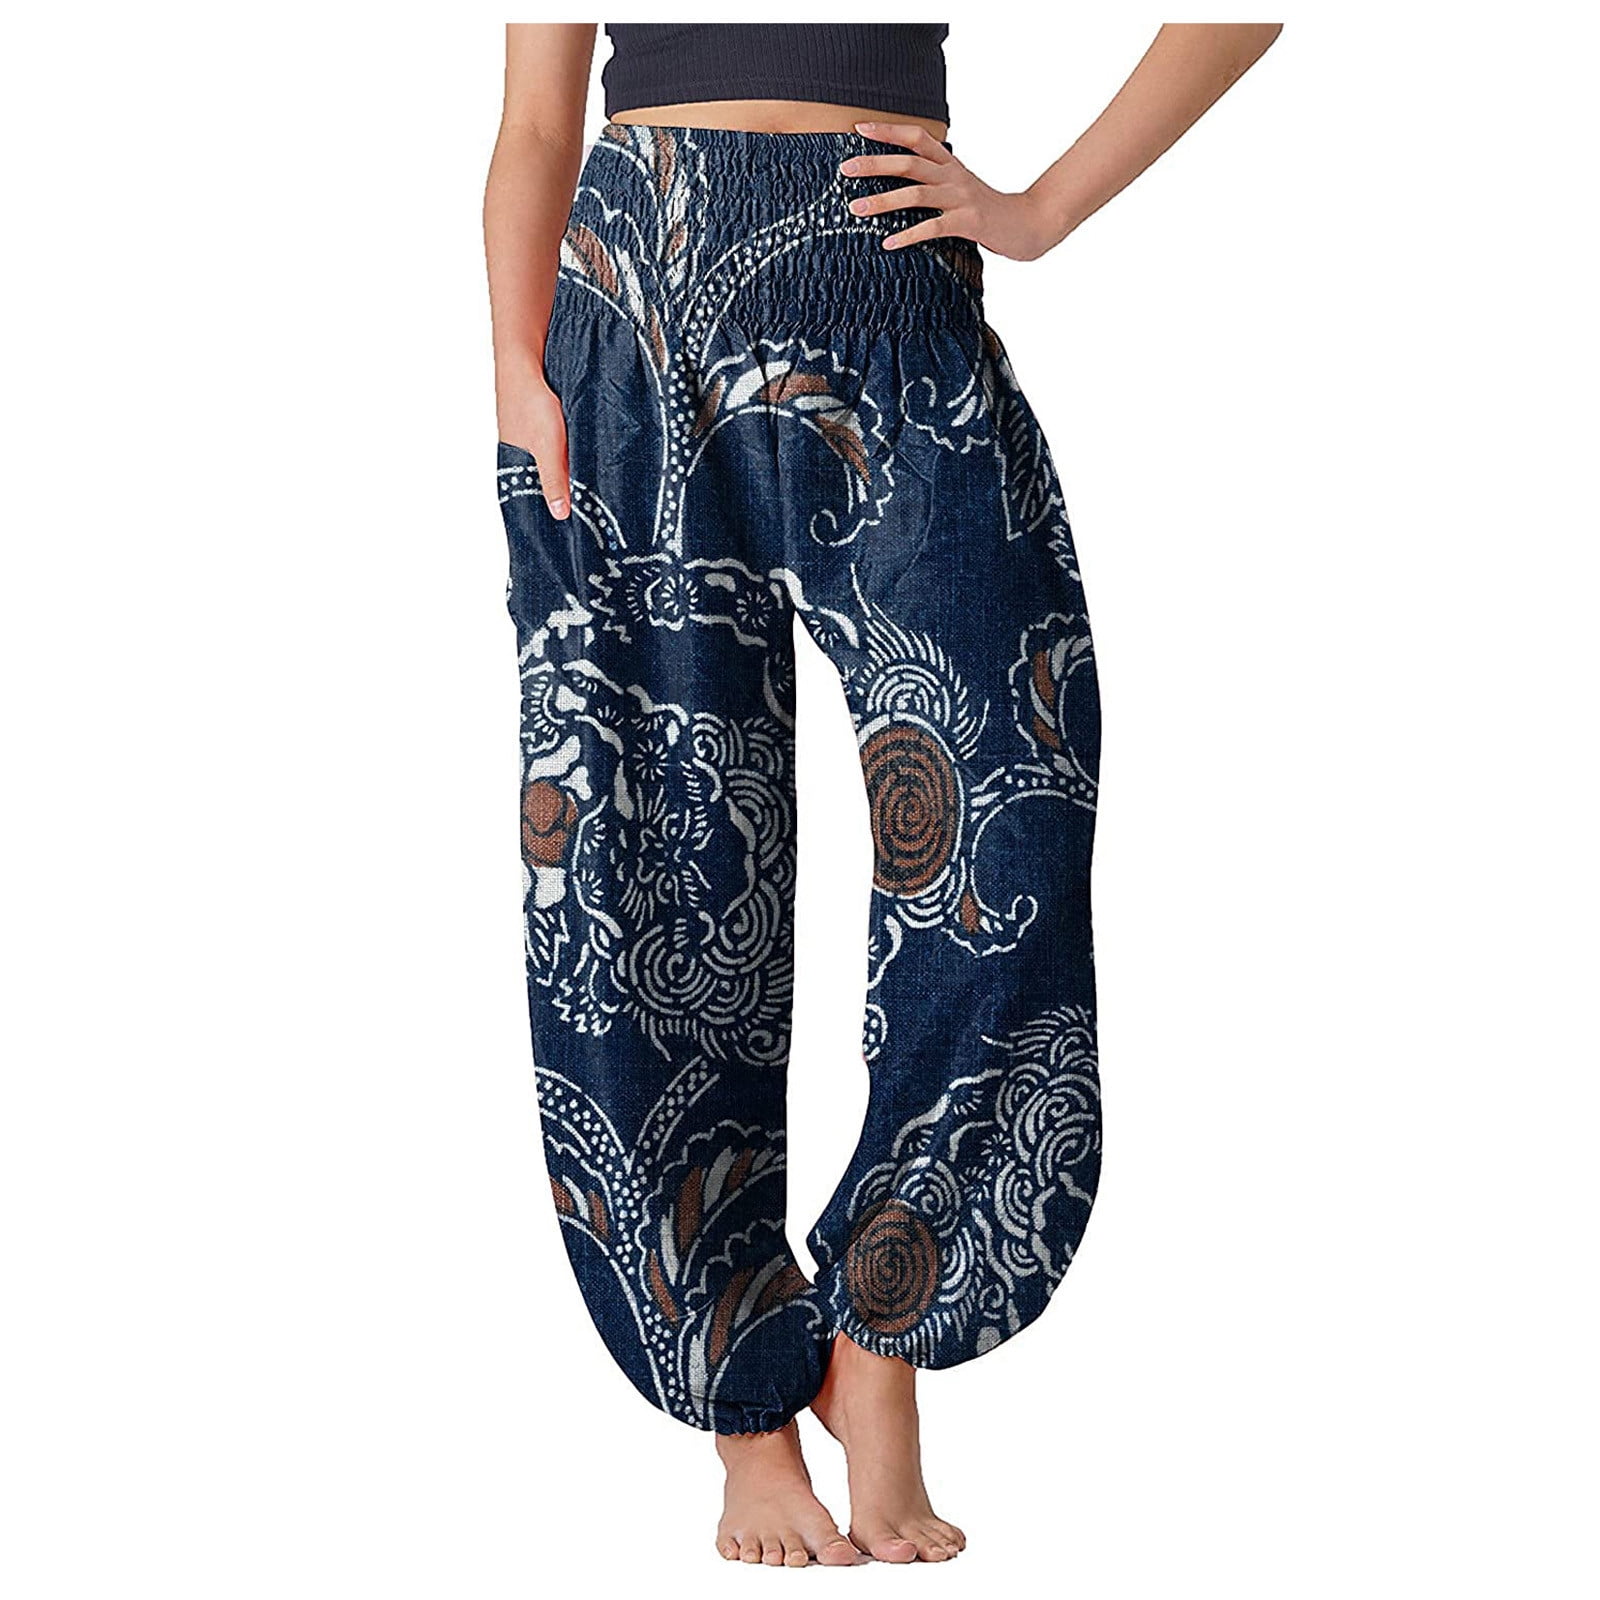 Yoga Pants Petite Length Women Casual Summer Loose Yoga Trousers Baggy Boho   eBay